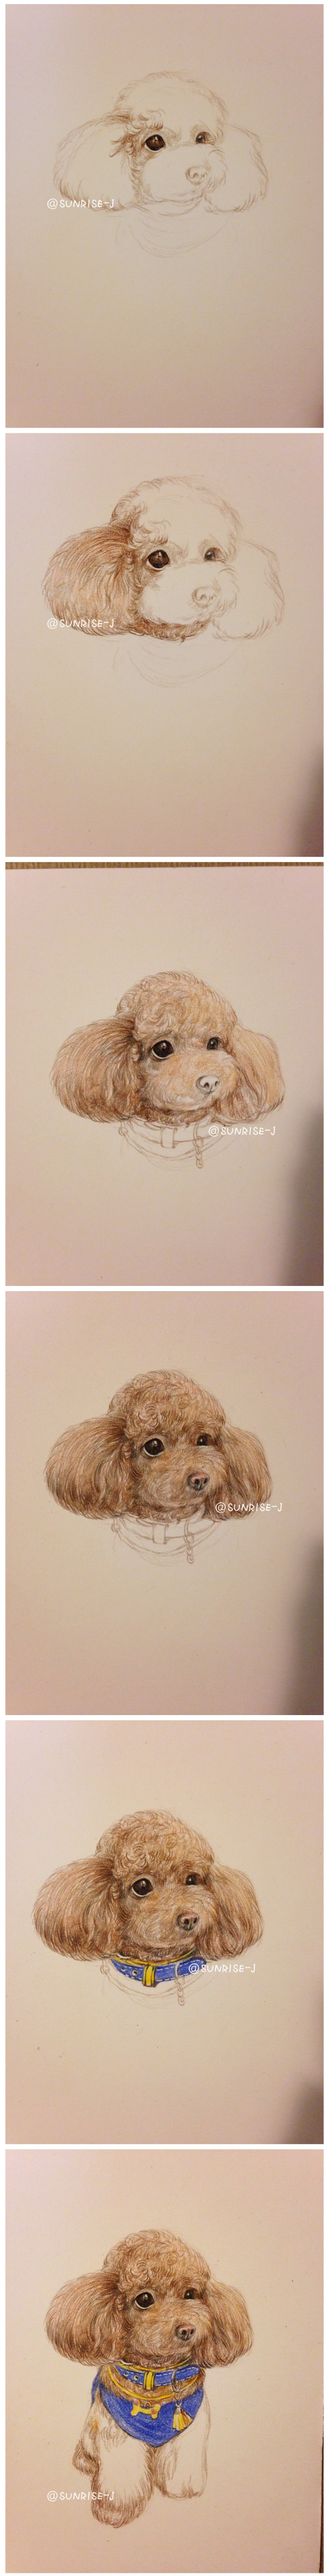 彩铅手绘一只泰迪狗狗